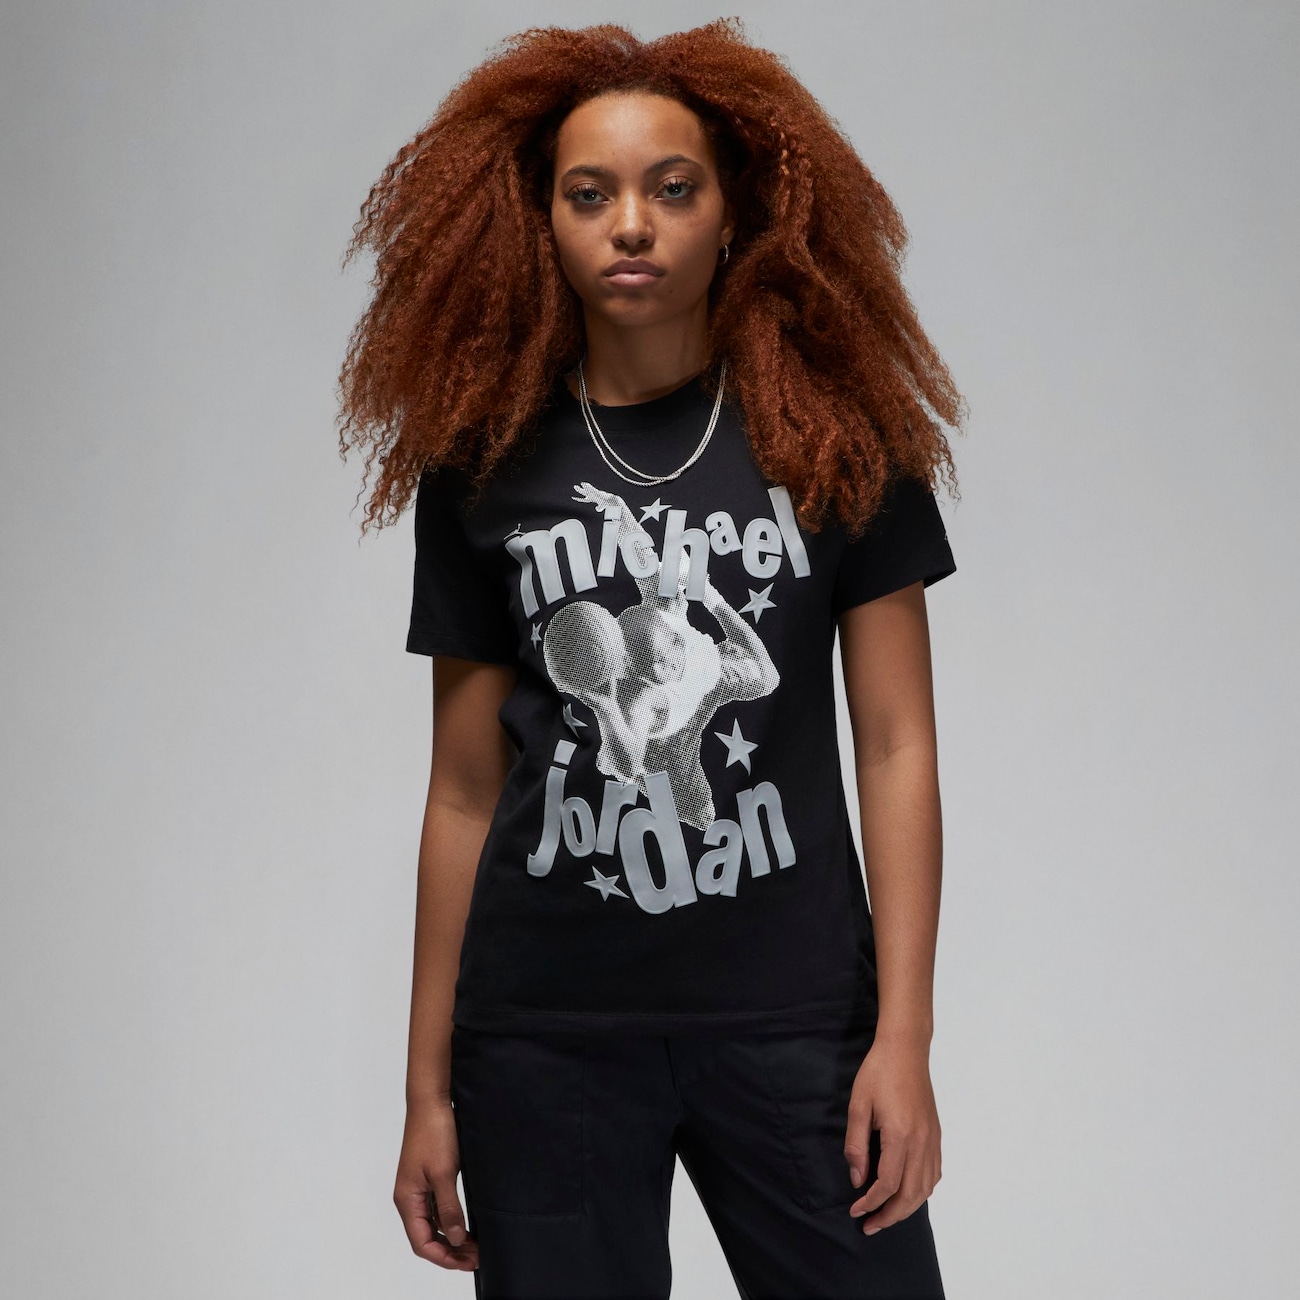 Jordan (Her)itage Camiseta - Mujer - Negro